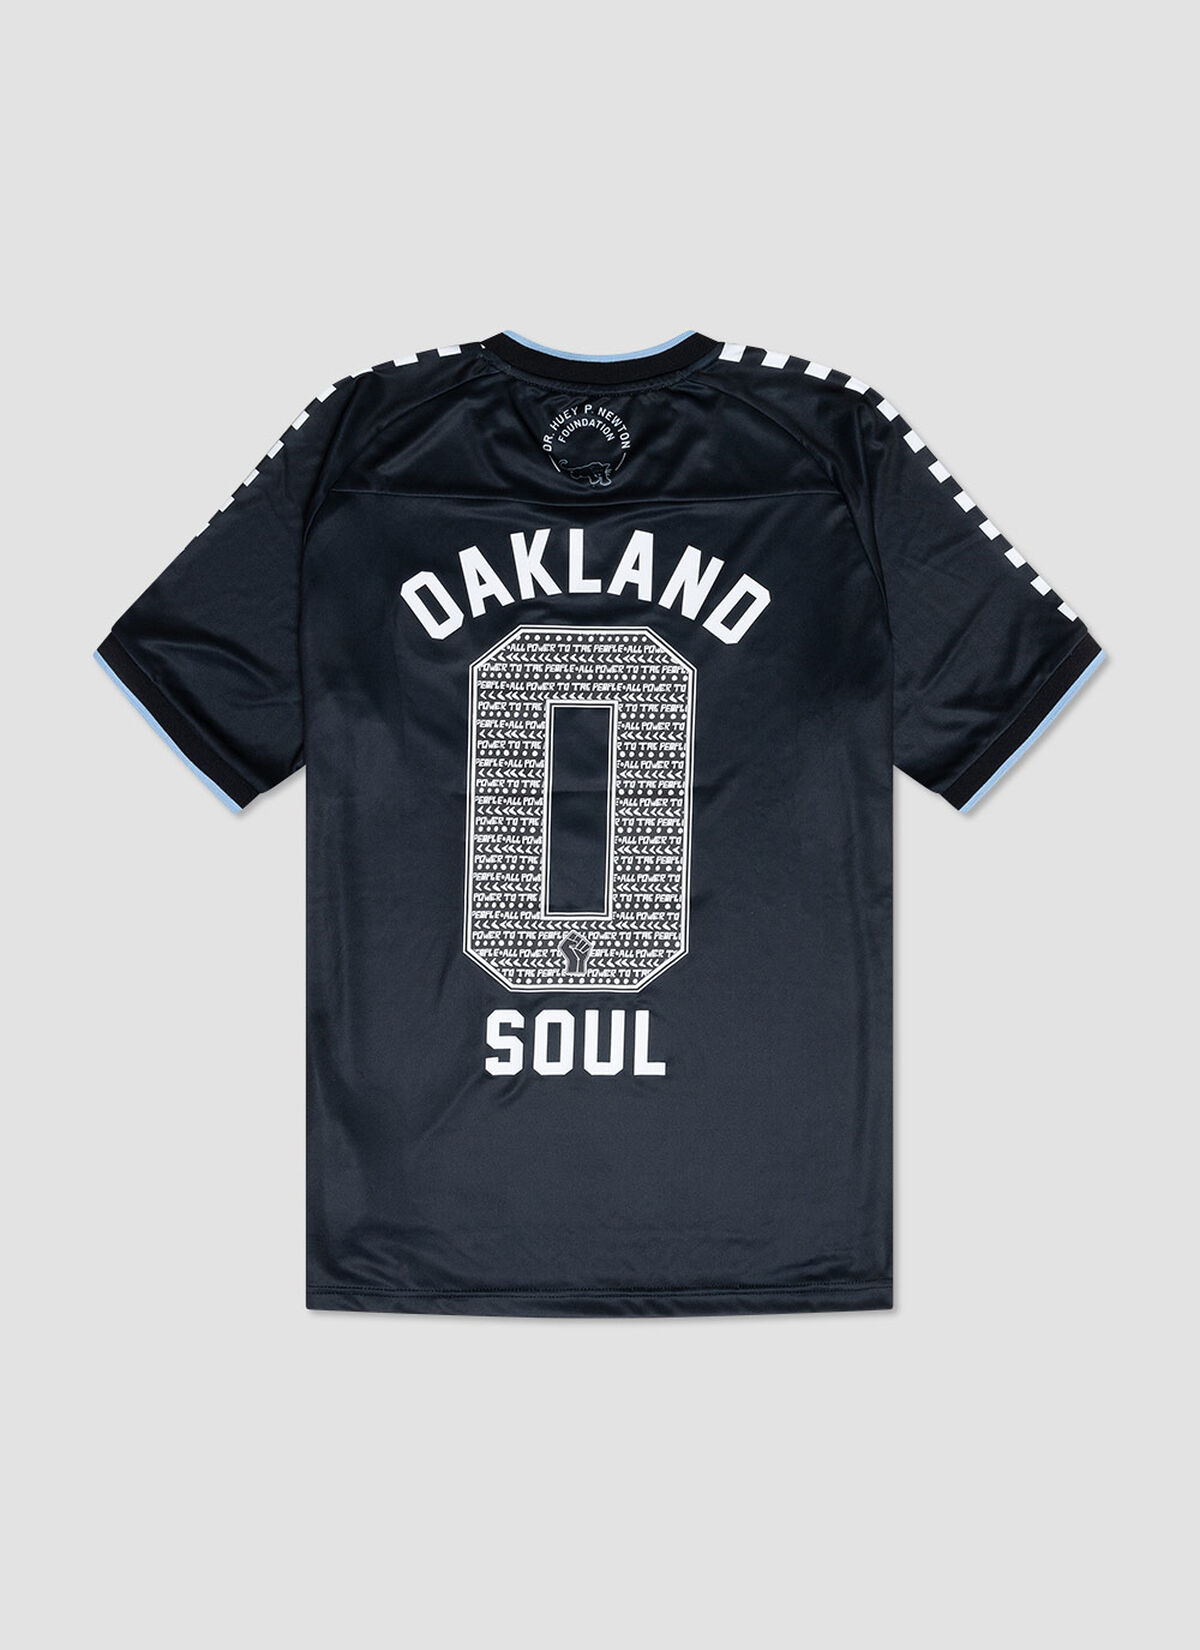 Oakland Soul Black Panther Jersey, Black, hi-res